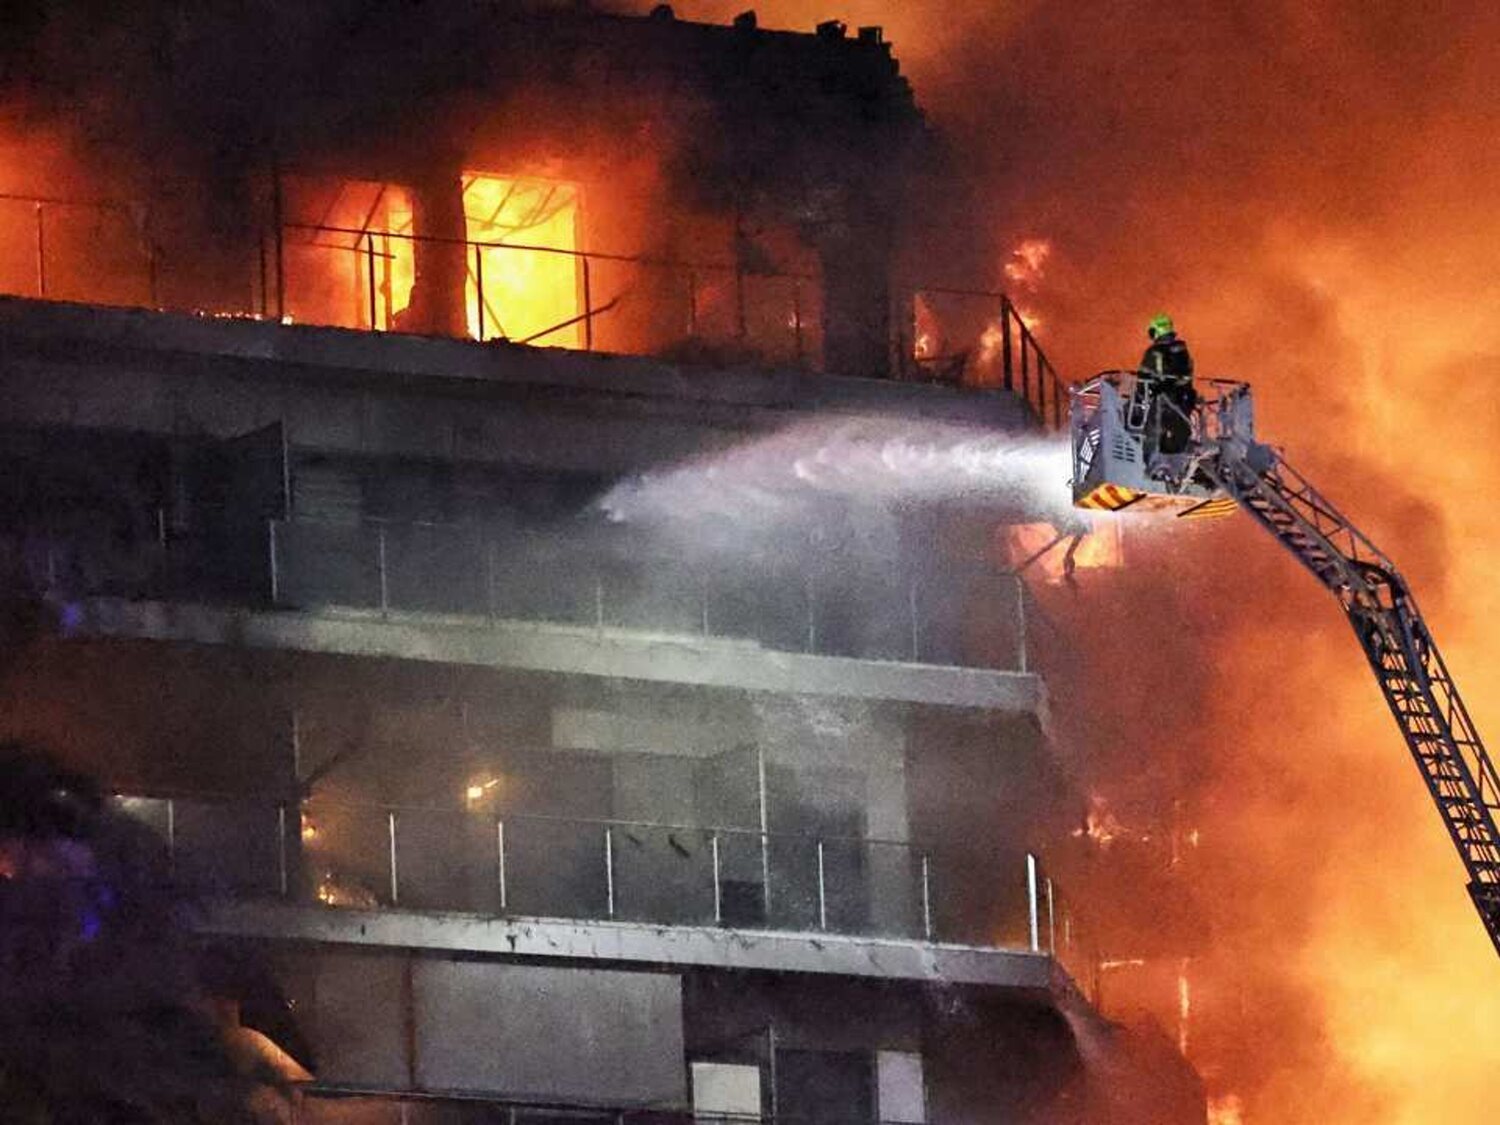 Un centenar de mascotas murieron en el incendio de los edificios Valencia: 48 perros, 36 gatos...